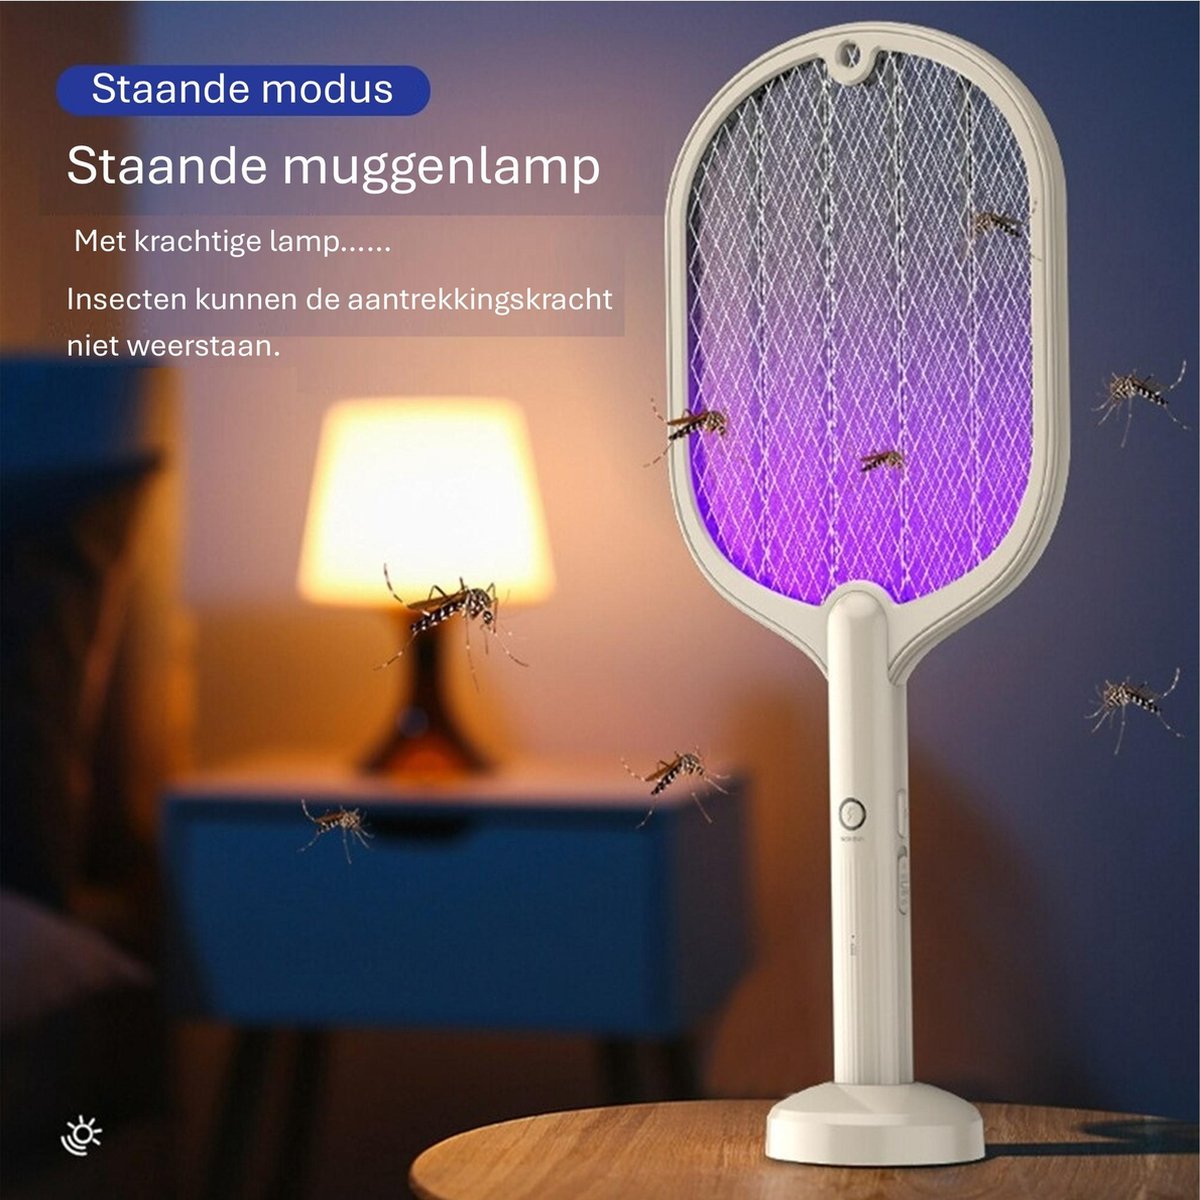 Ariko Mugzapper 2-in-1 Elektrische Mückenklatsche Fliegenklatsche - Mückenlampe - USB wiederaufladbarer Akku - Stehend und kann von Hand verwendet werden